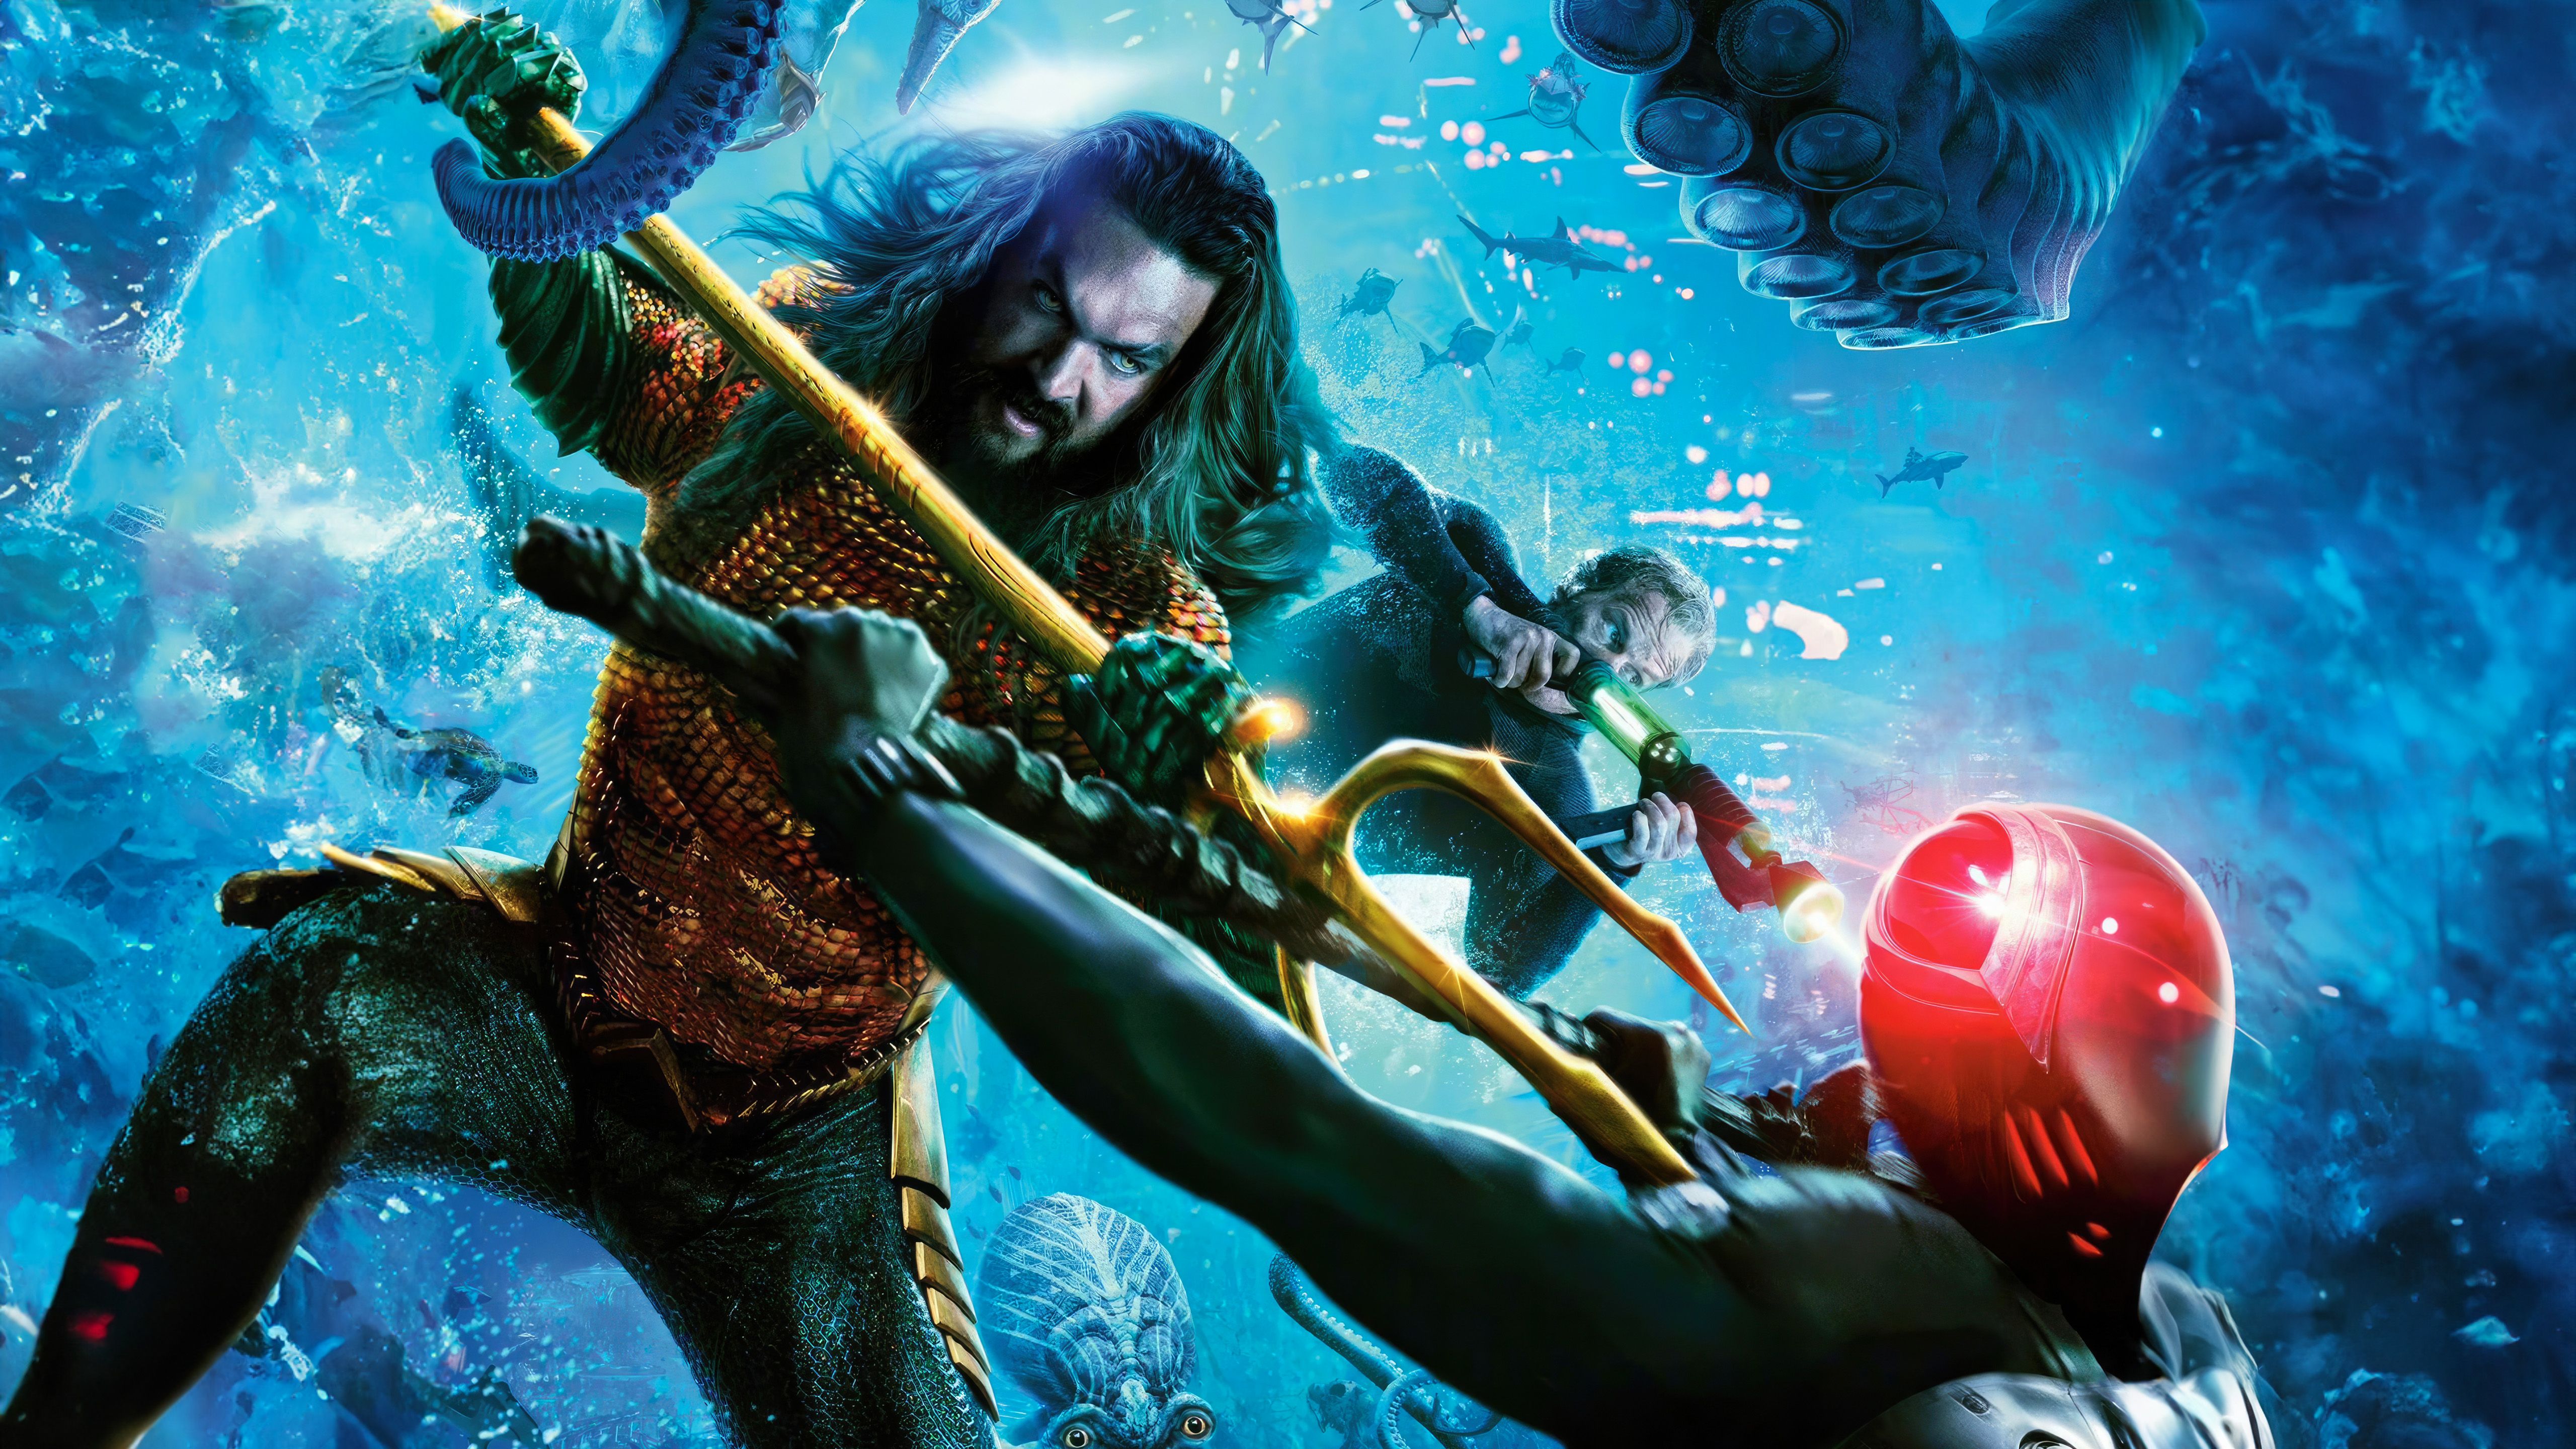  Aquaman And The Lost Kingdom Hintergrundbild 5120x2880. Aquaman and the Lost Kingdom Wallpaper 4K, Black Manta, 5K